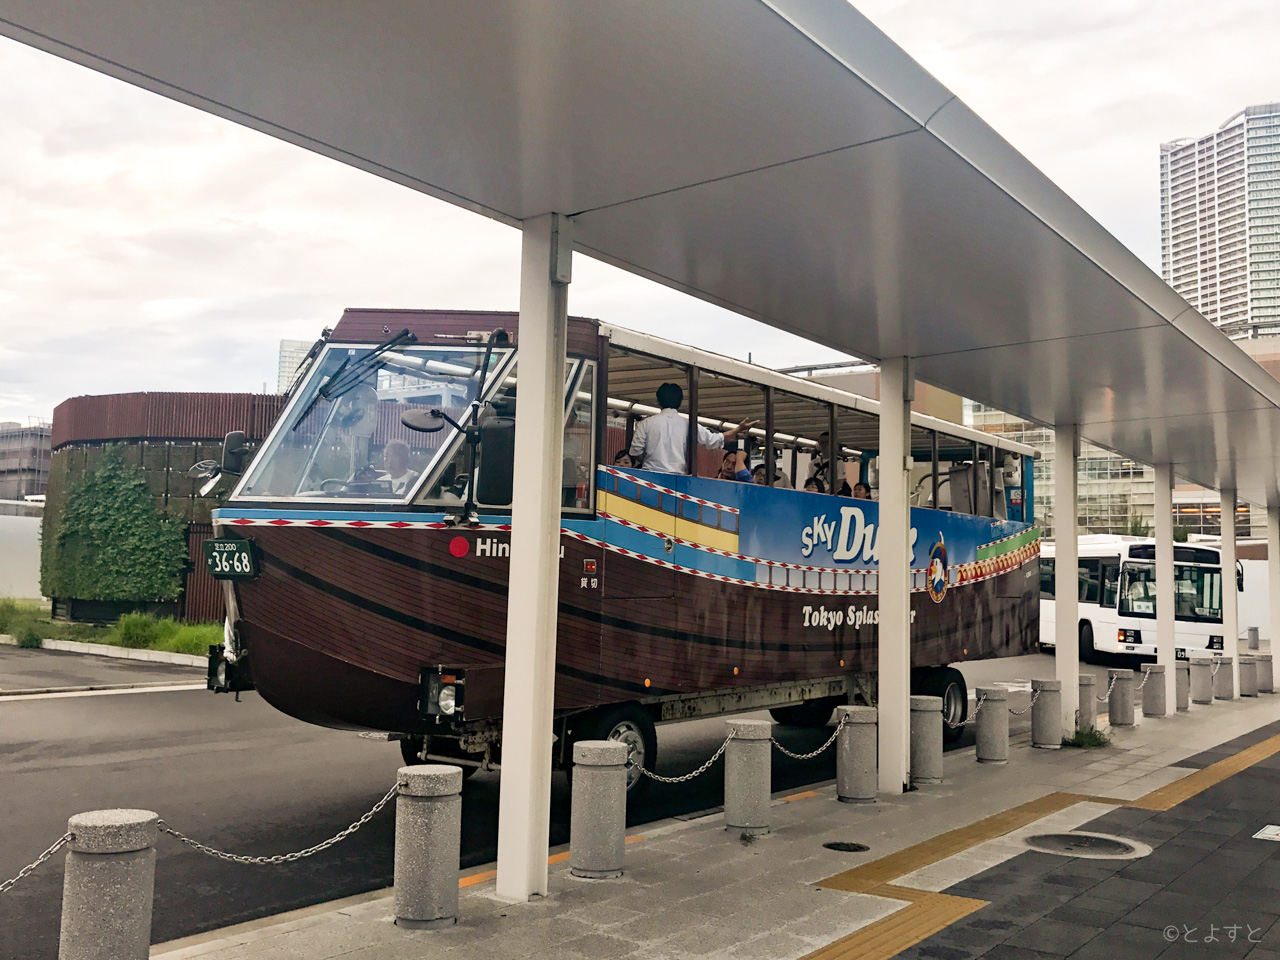 水陸両用バス「スカイダック」、豊洲での乗車位置は駅前ロータリー4番の隣が濃厚